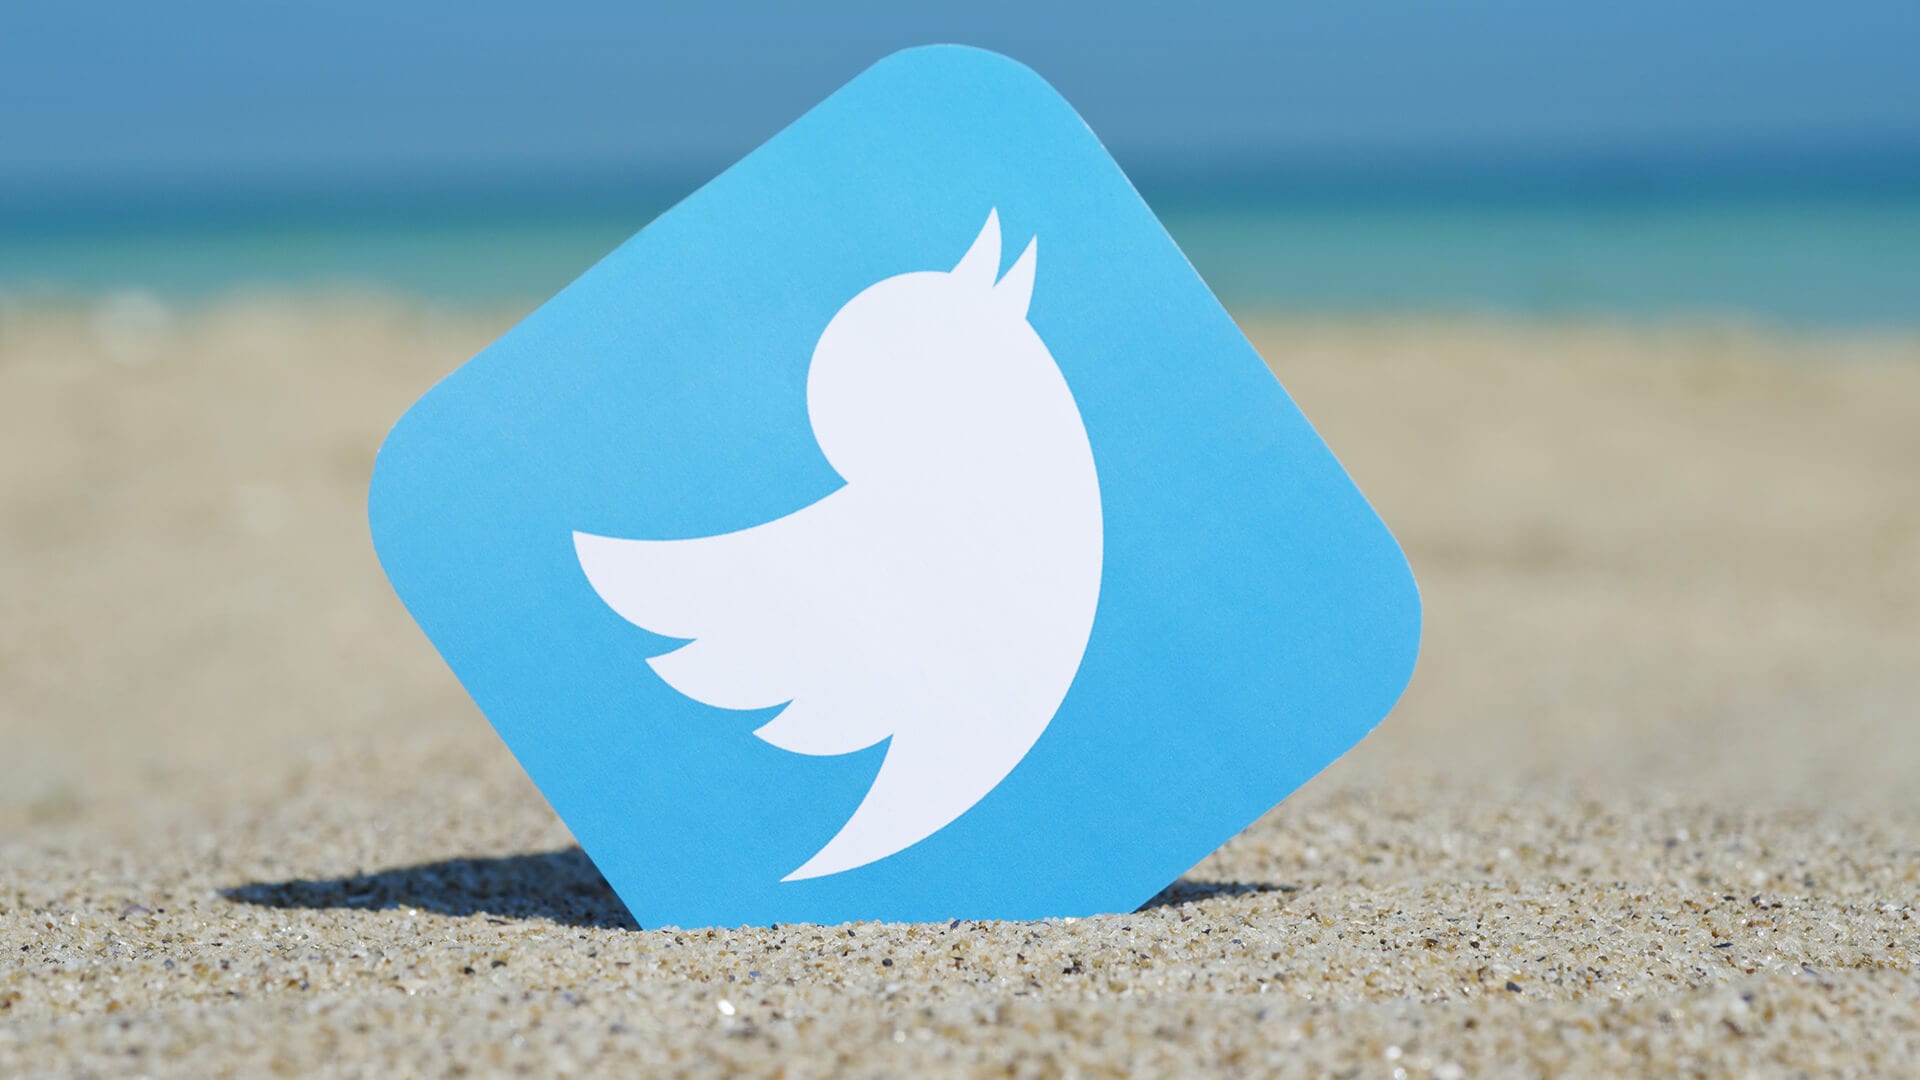 twitter-bird-logo-beach-ss-1920.jpg